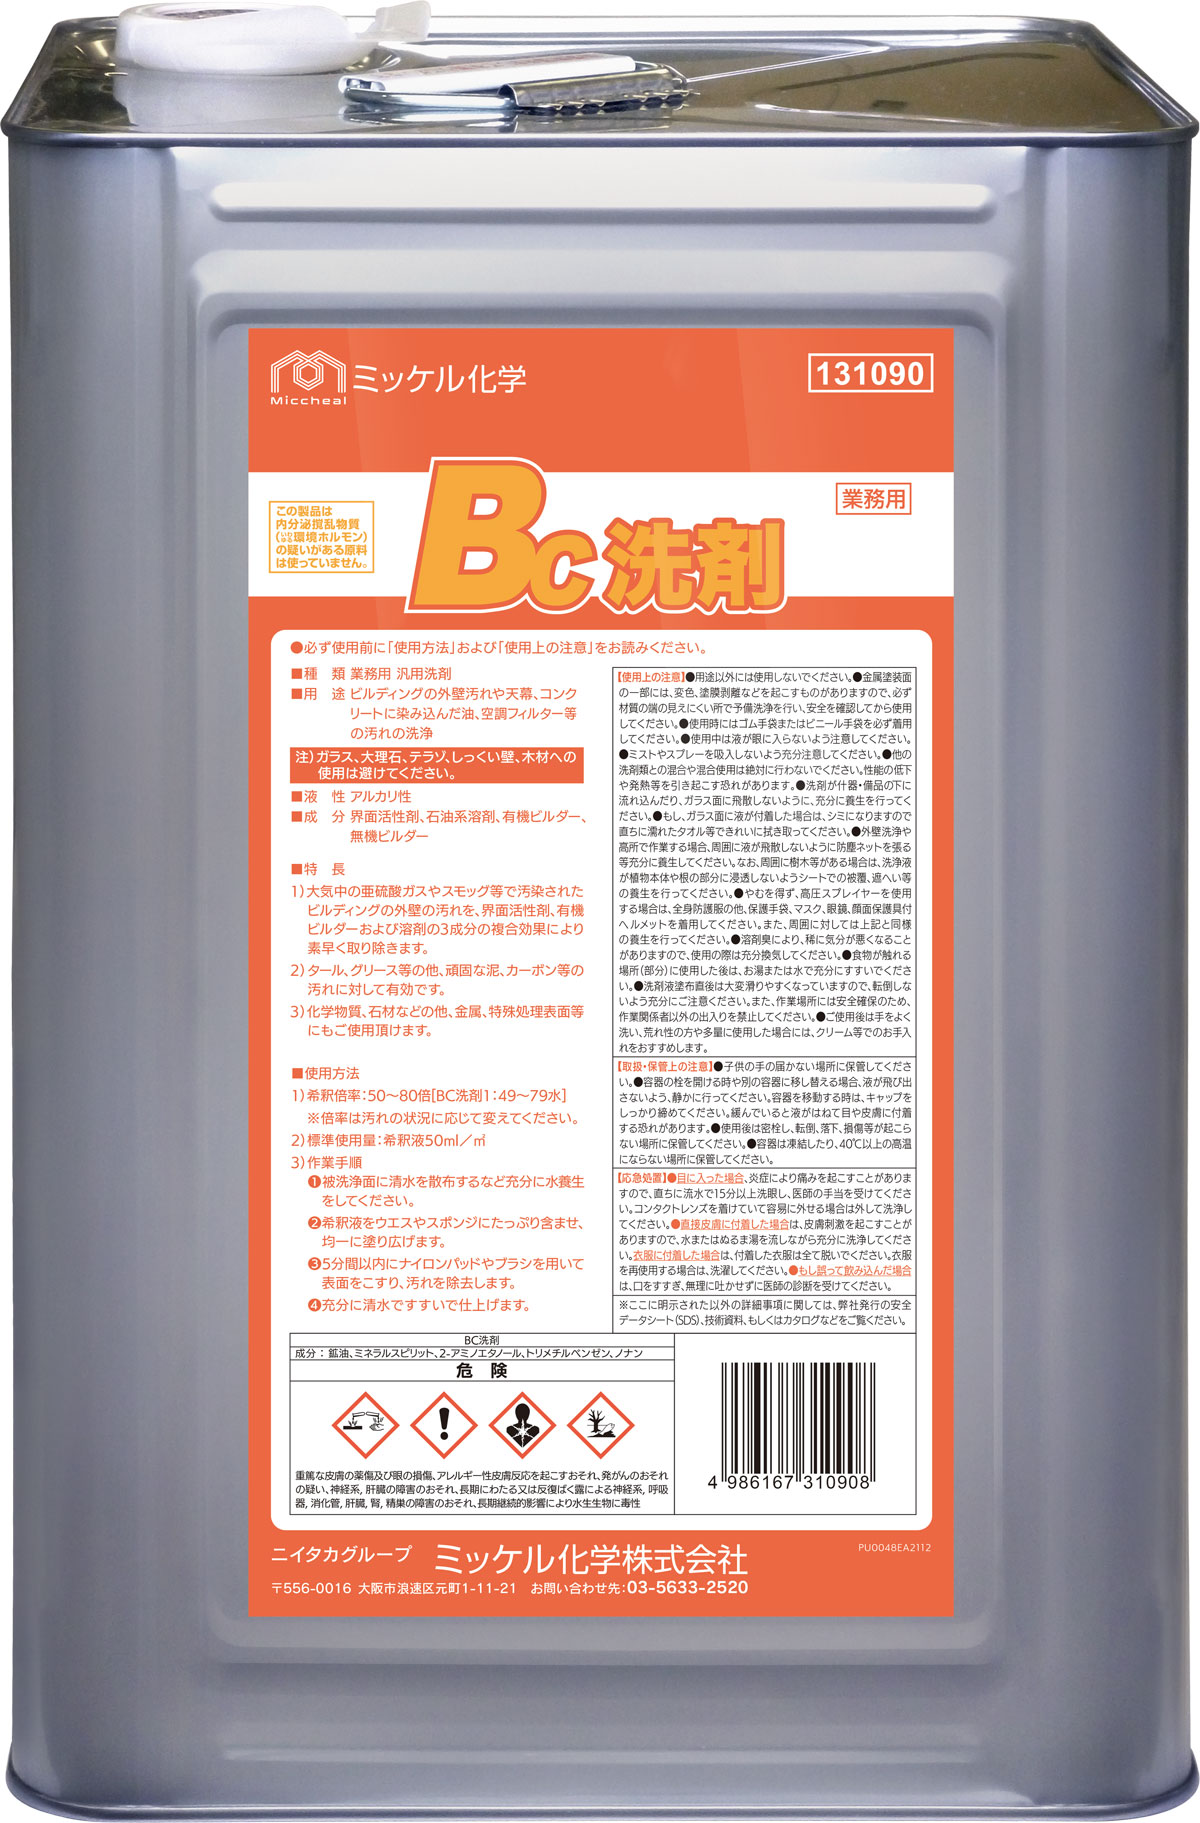 BC洗剤 - ミッケル化学株式会社